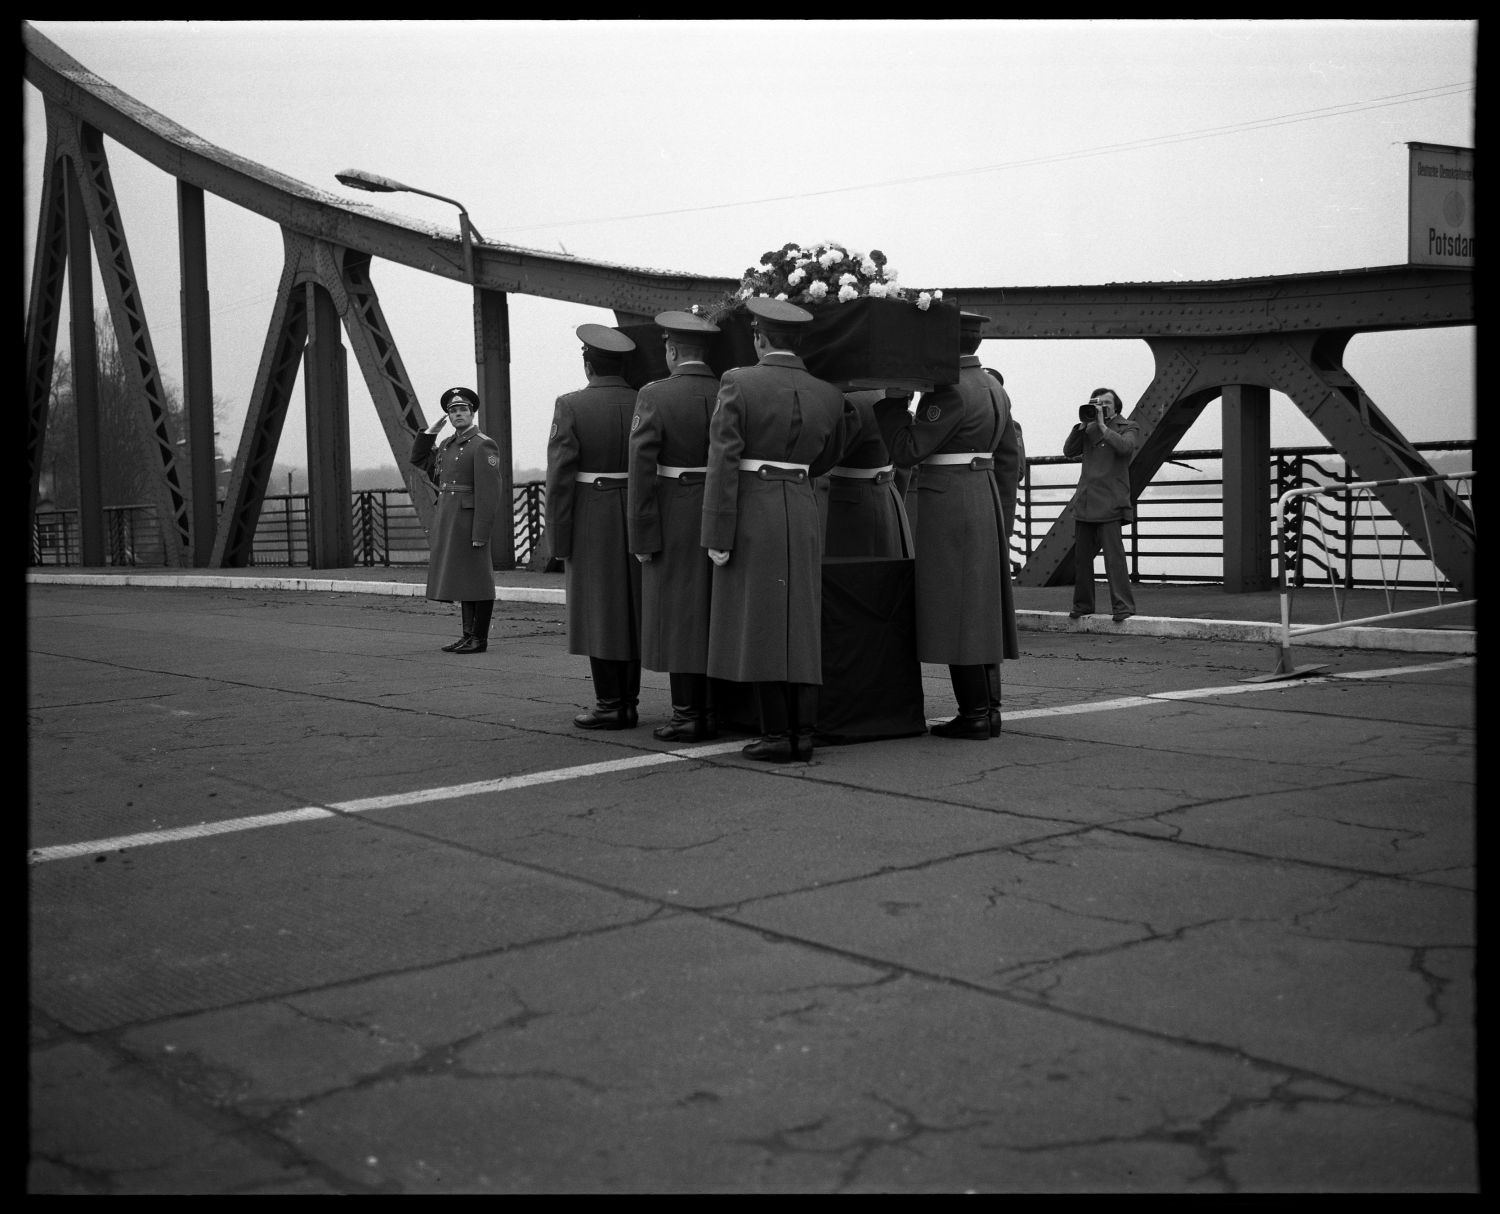 S/w-Fotografie: Überführung der sterblichen Überreste eines sowjetischen Soldaten über die Glienicker Brücke zwischen West-Berlin und Potsdam